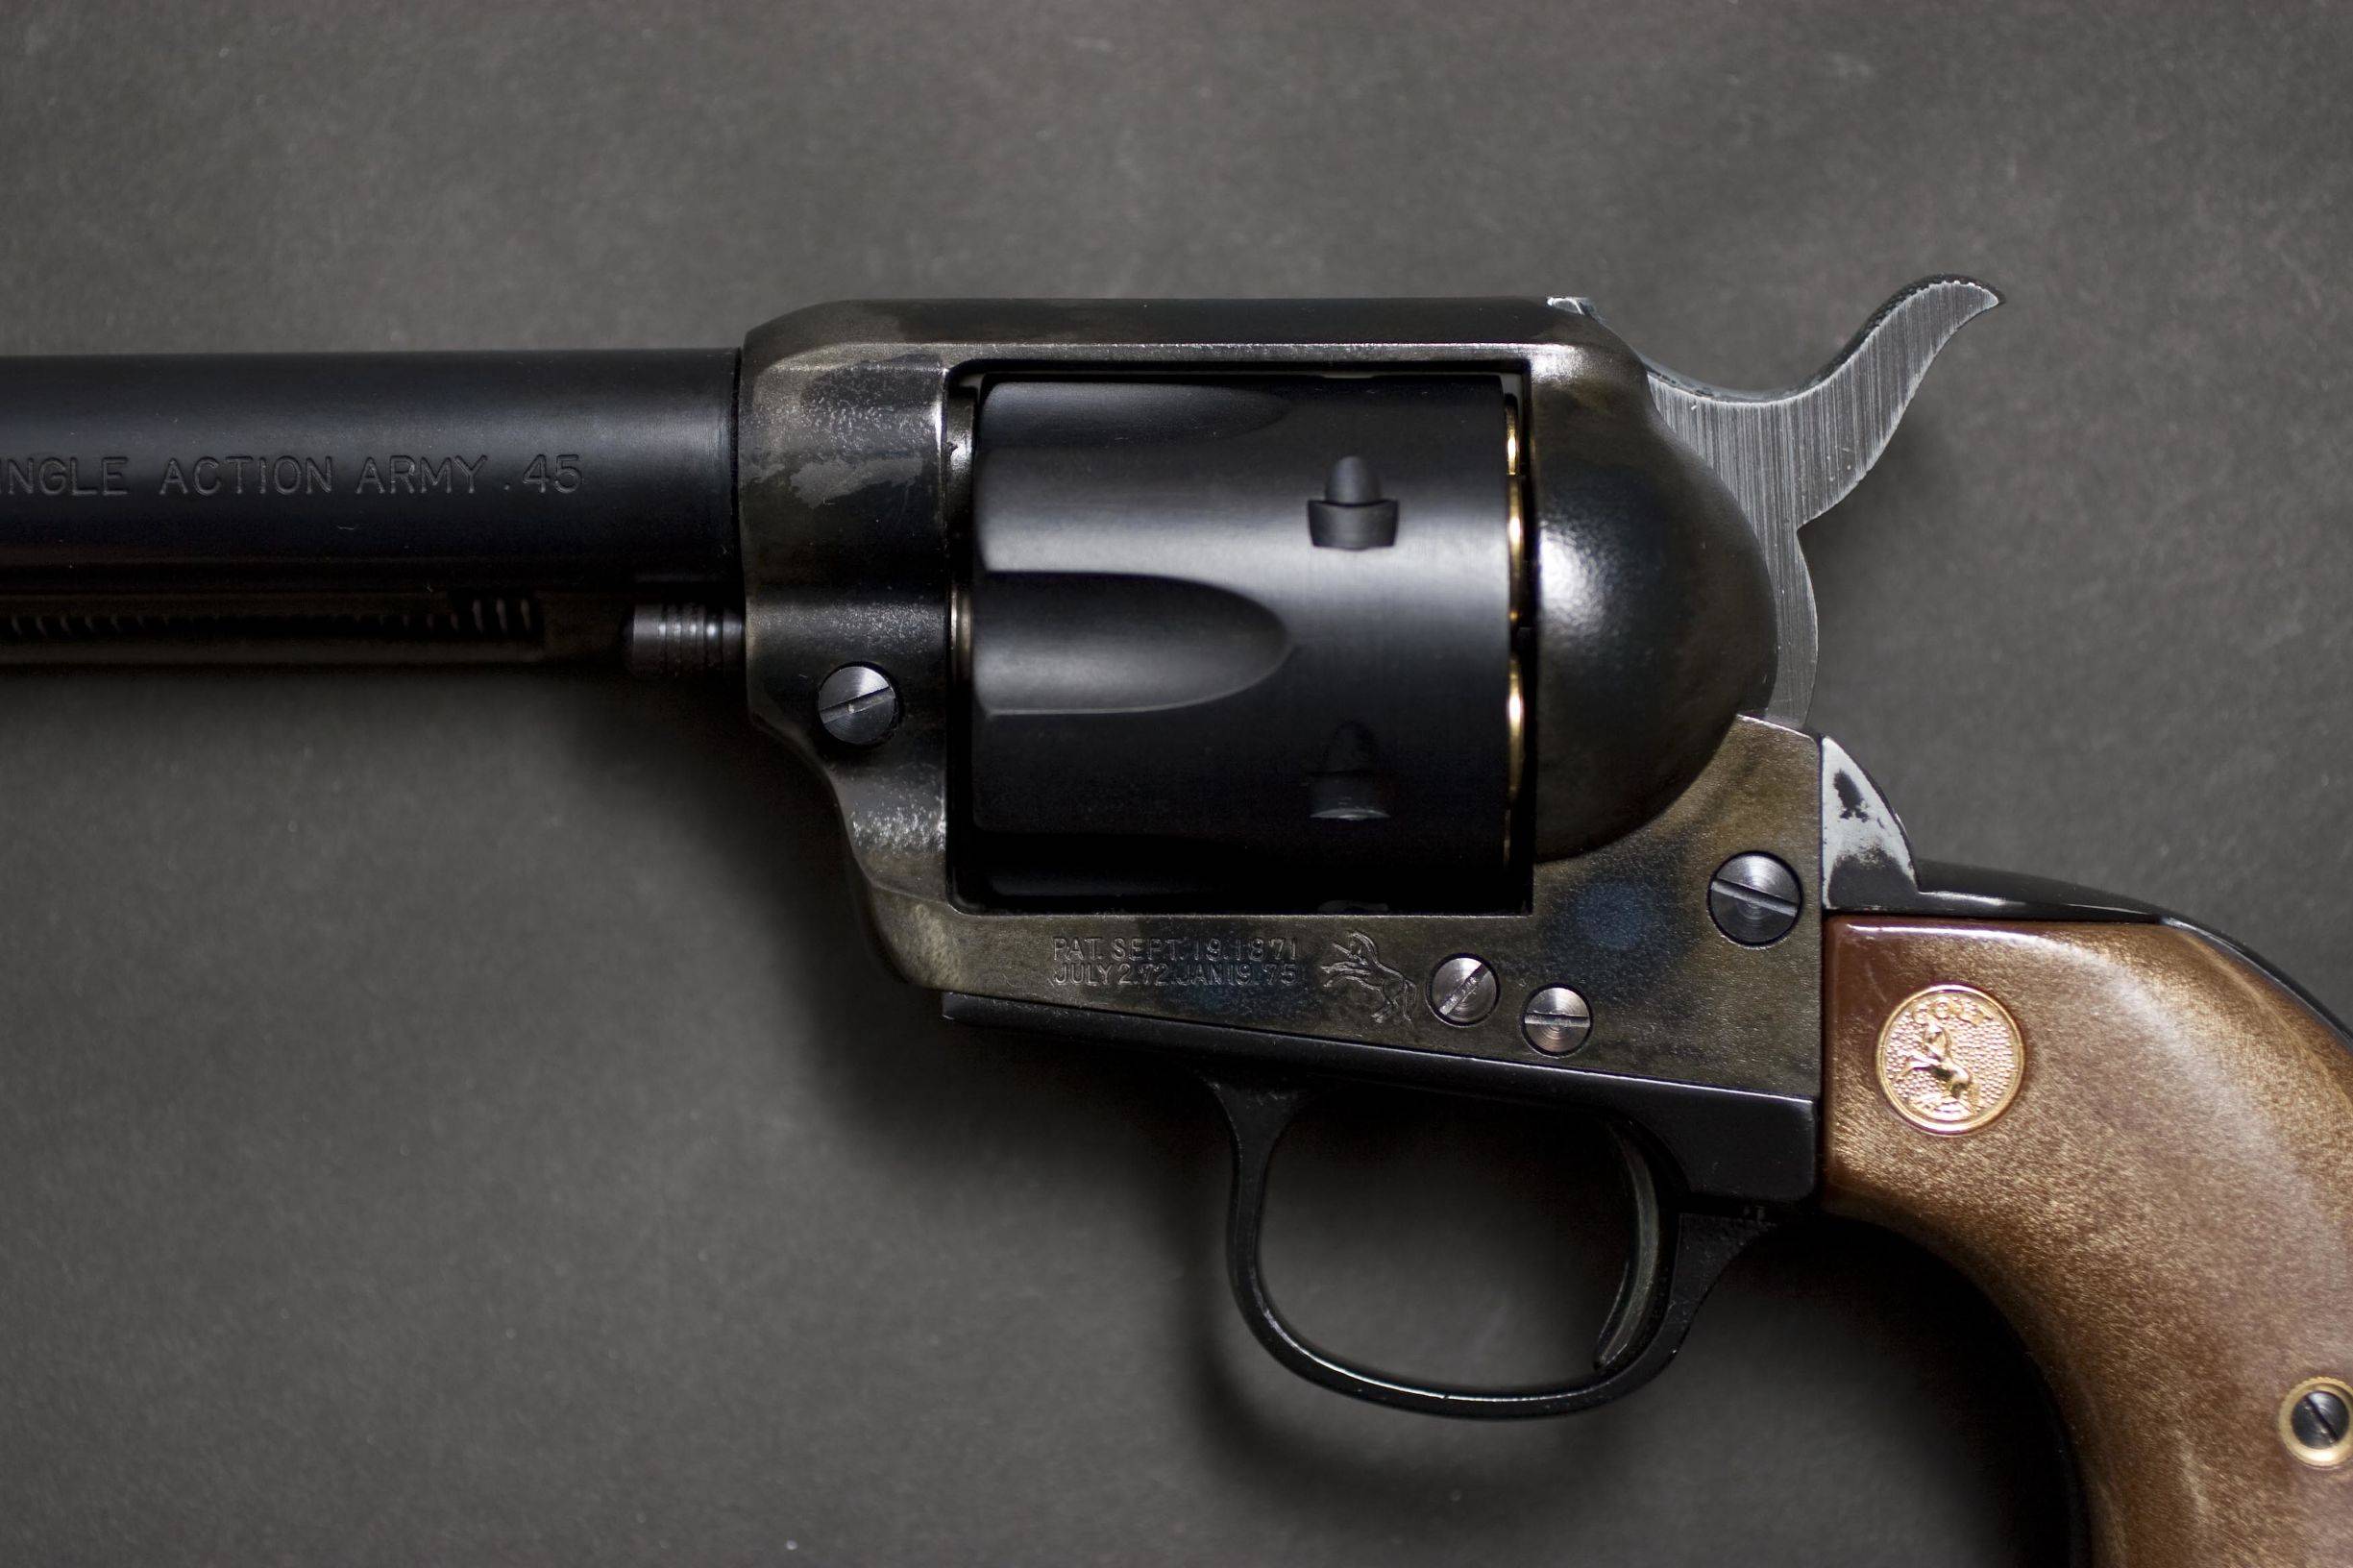 单动式陆军转轮手枪是由柯尔特在1872年研制的(尽管如此这枪在柯尔特